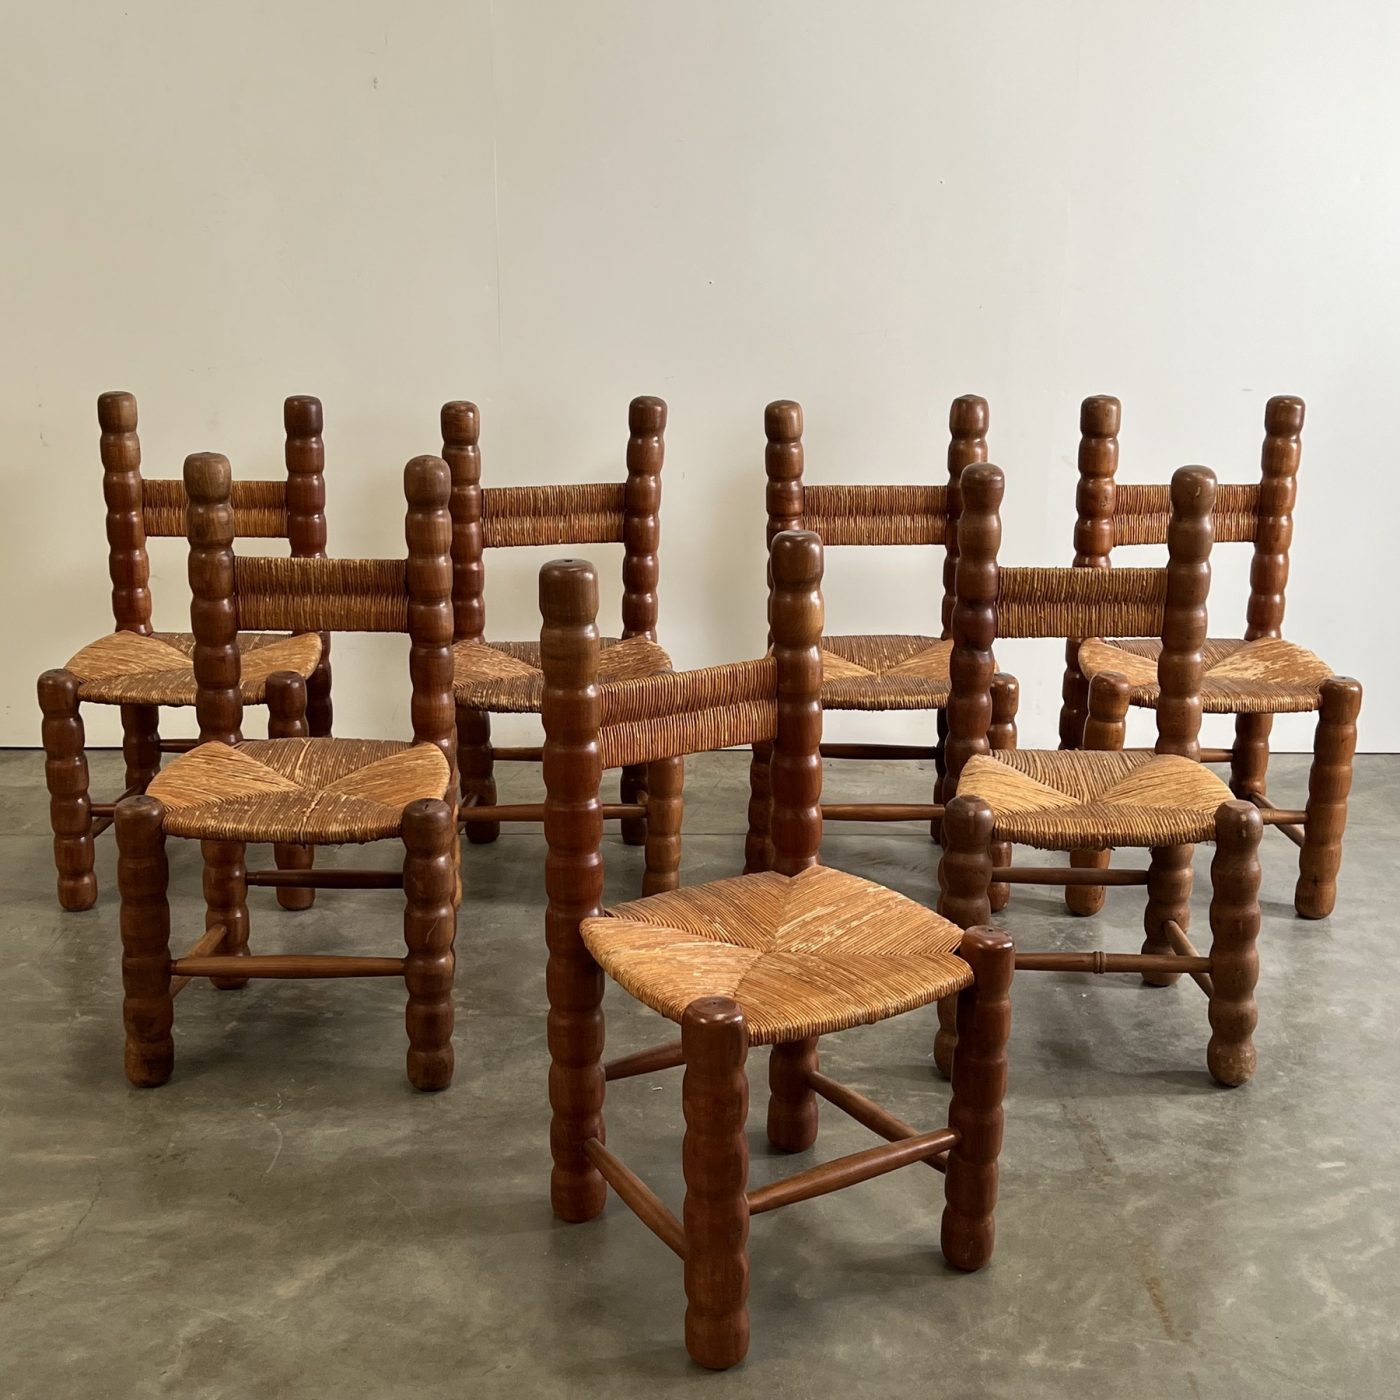 objet-vagabond-massive-chairs0007